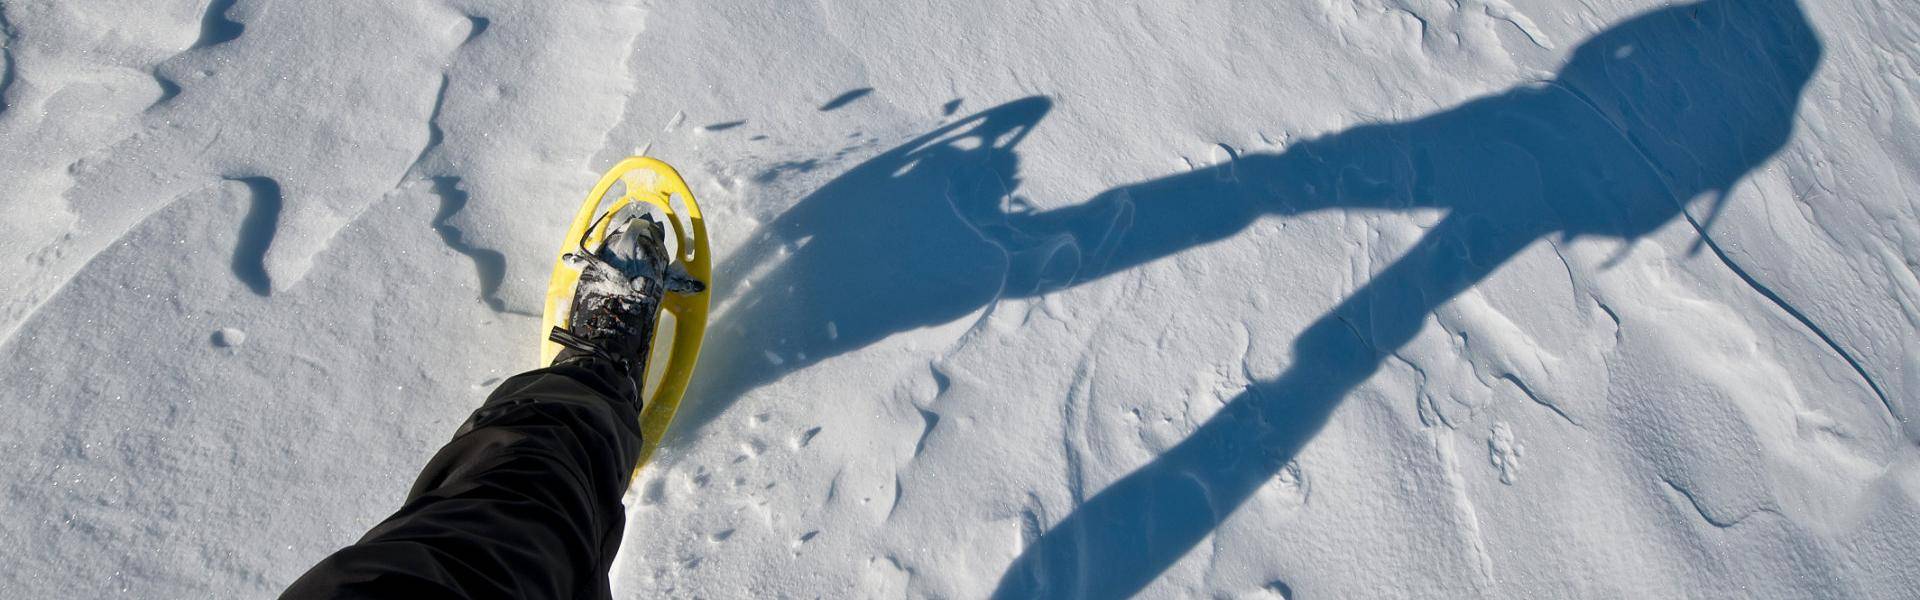 Ciaspolare sulla neve è un ottimo modo per stare a contatto con la natura durante i mesi invernali